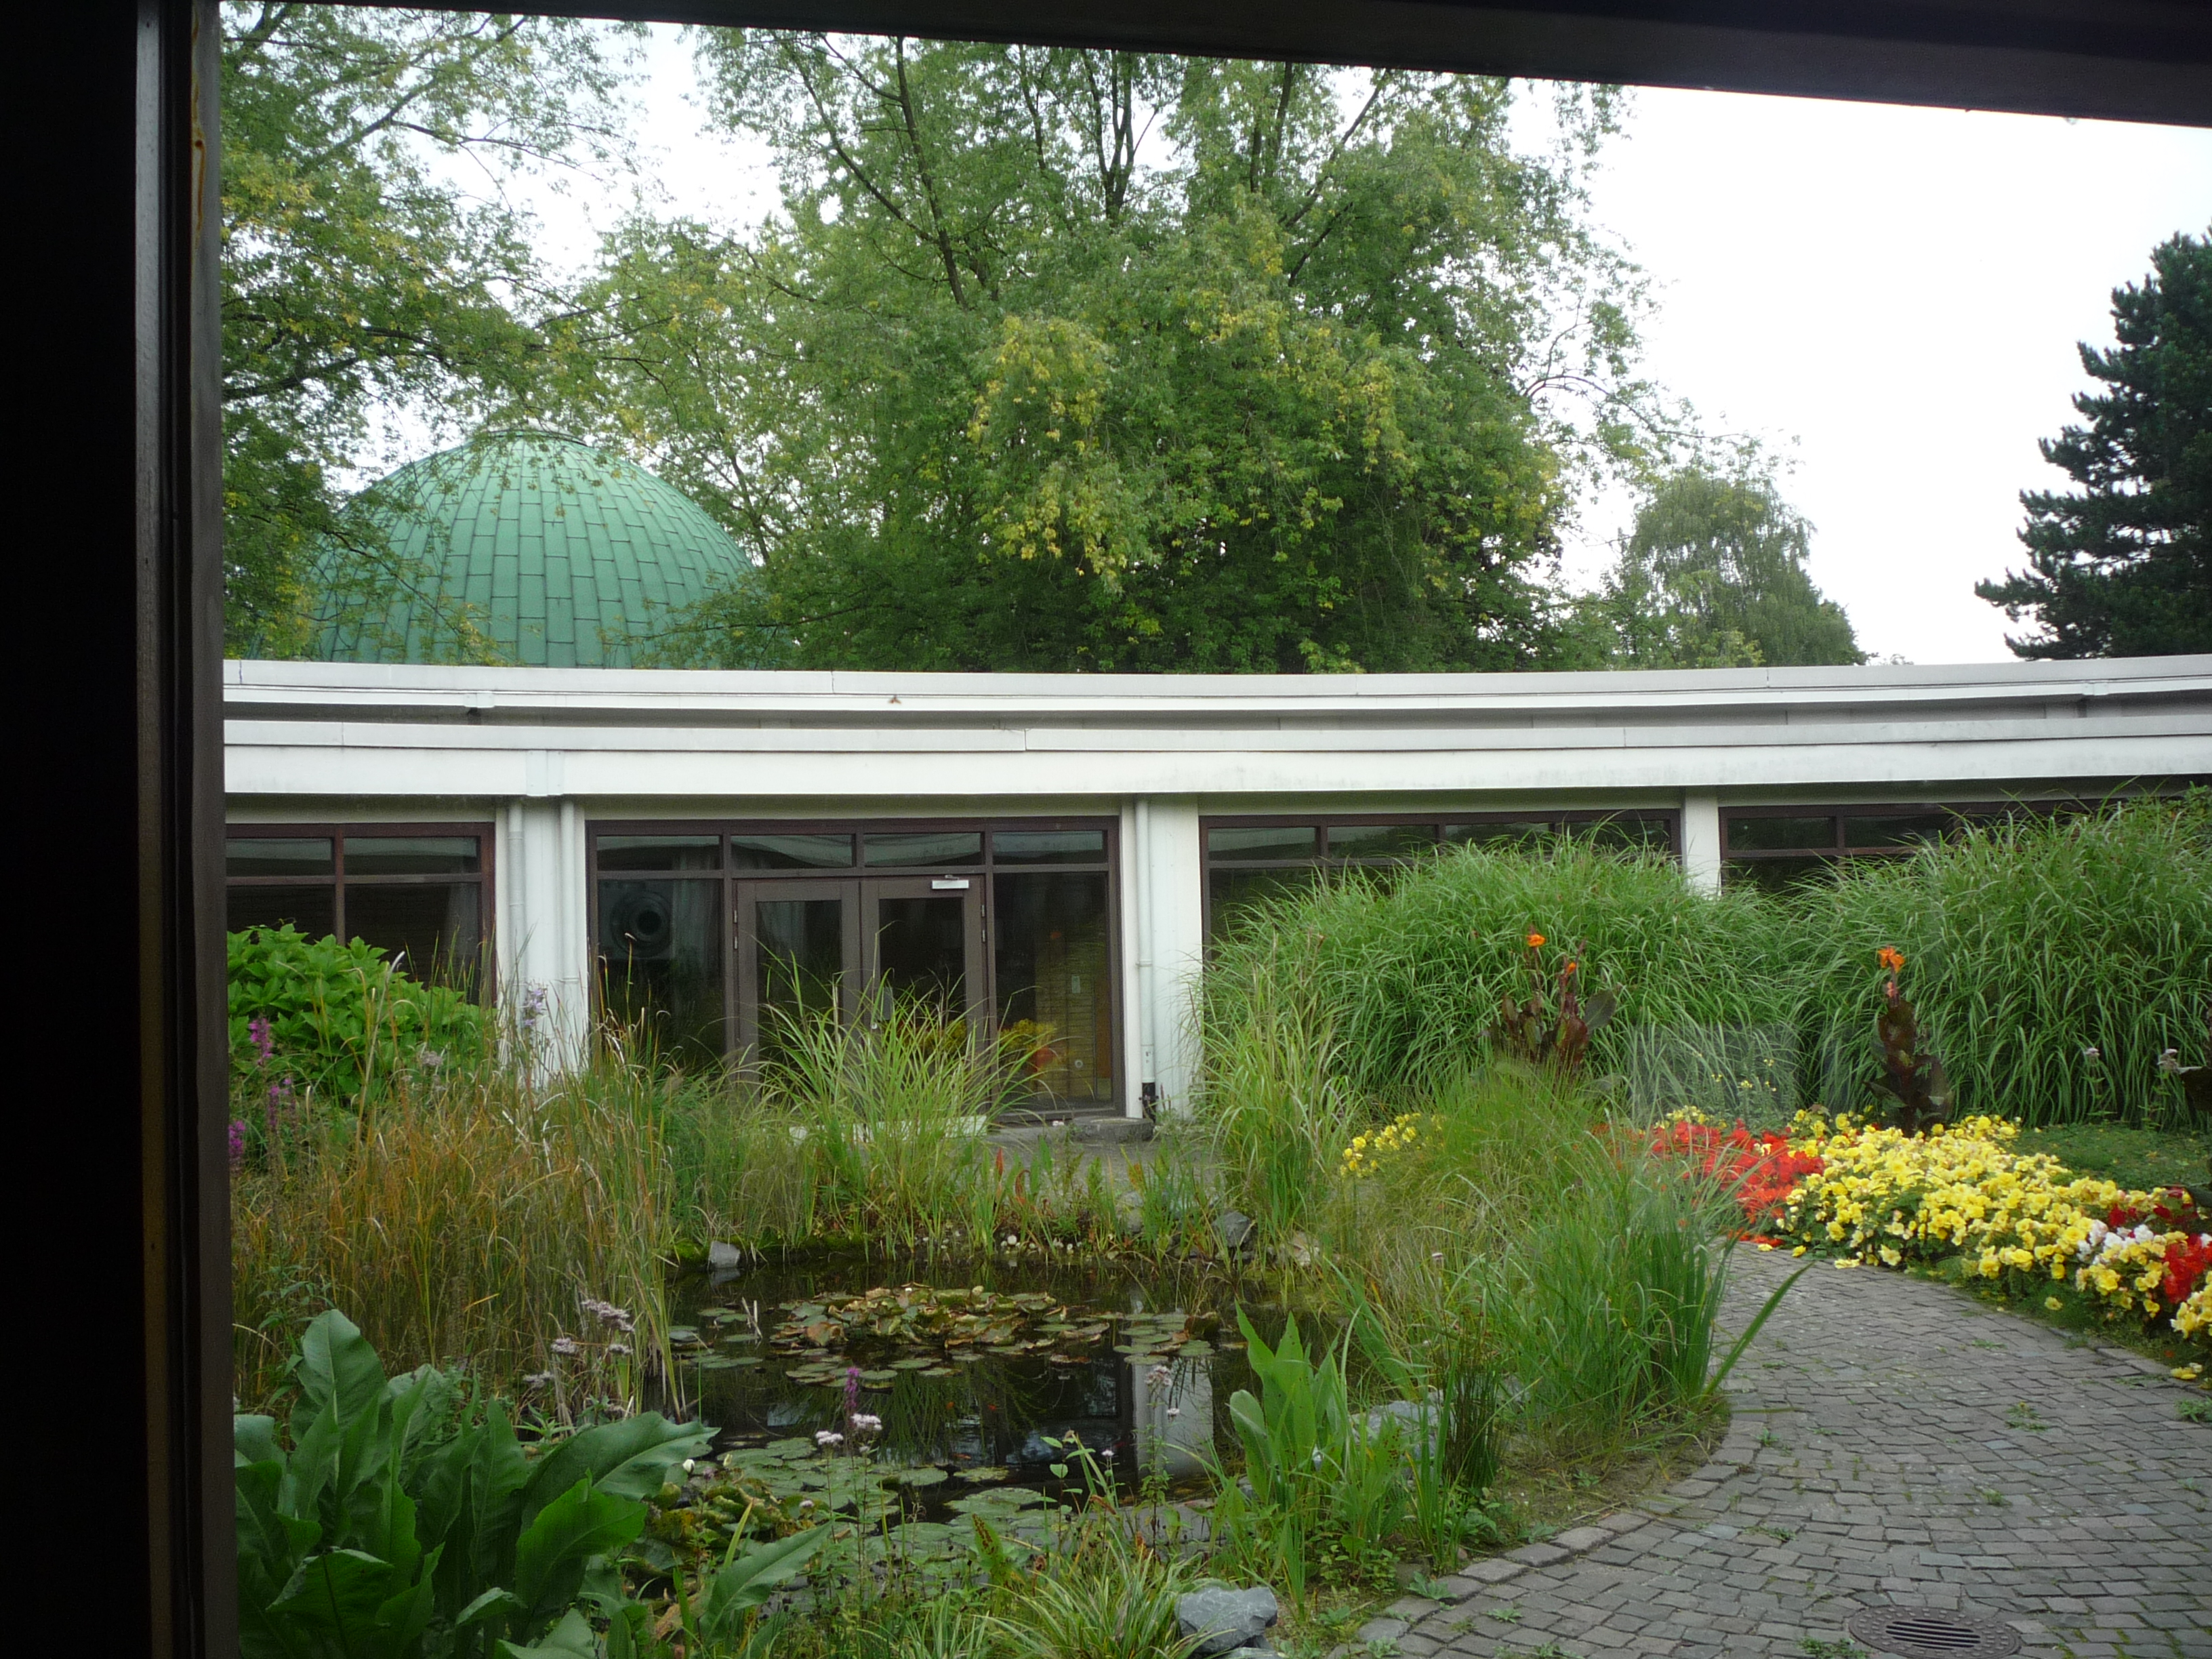 Blick in eine sonnigen runden verglasten Innenhof mit Teich, Schilf, Blumen, im Hintergrund eine kupfergrüne Kuppel.